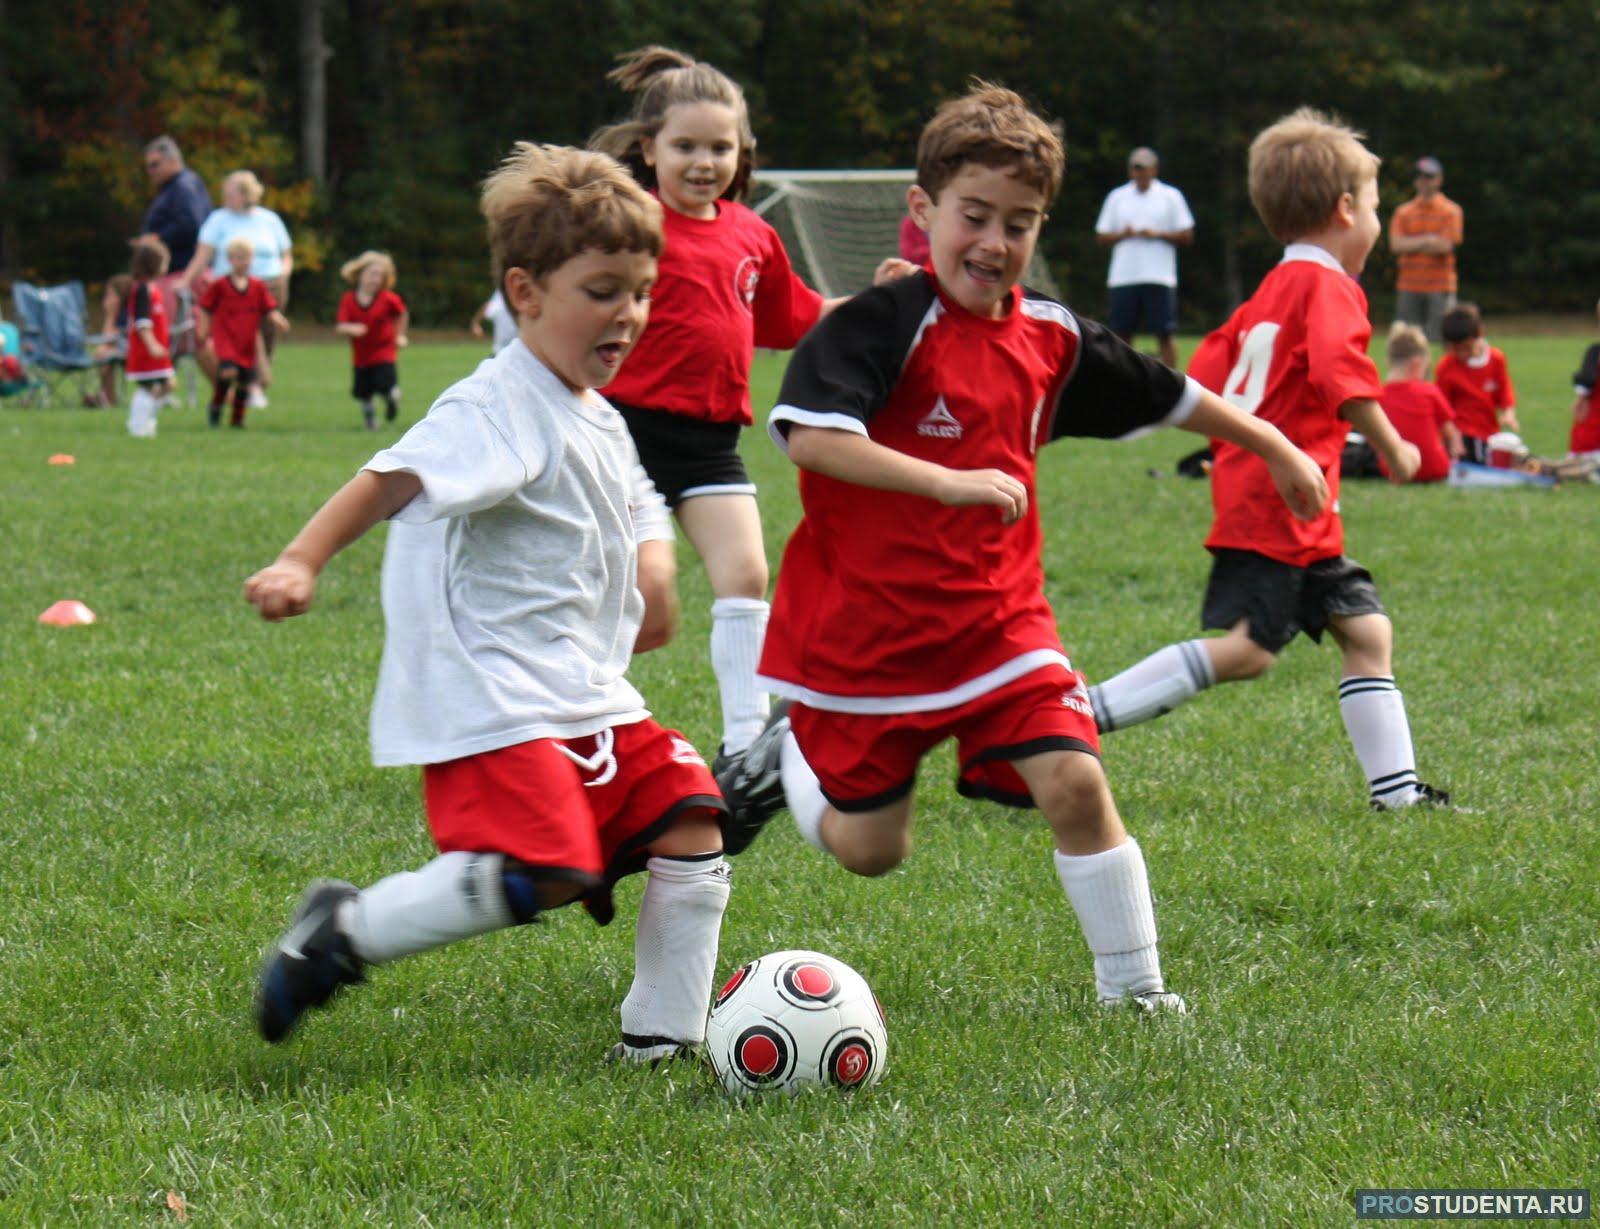 Там играют в футбол. Дети играющие в футбол. Детский футбол. Игра для детей "футбол". Мальчик играет в футбол.